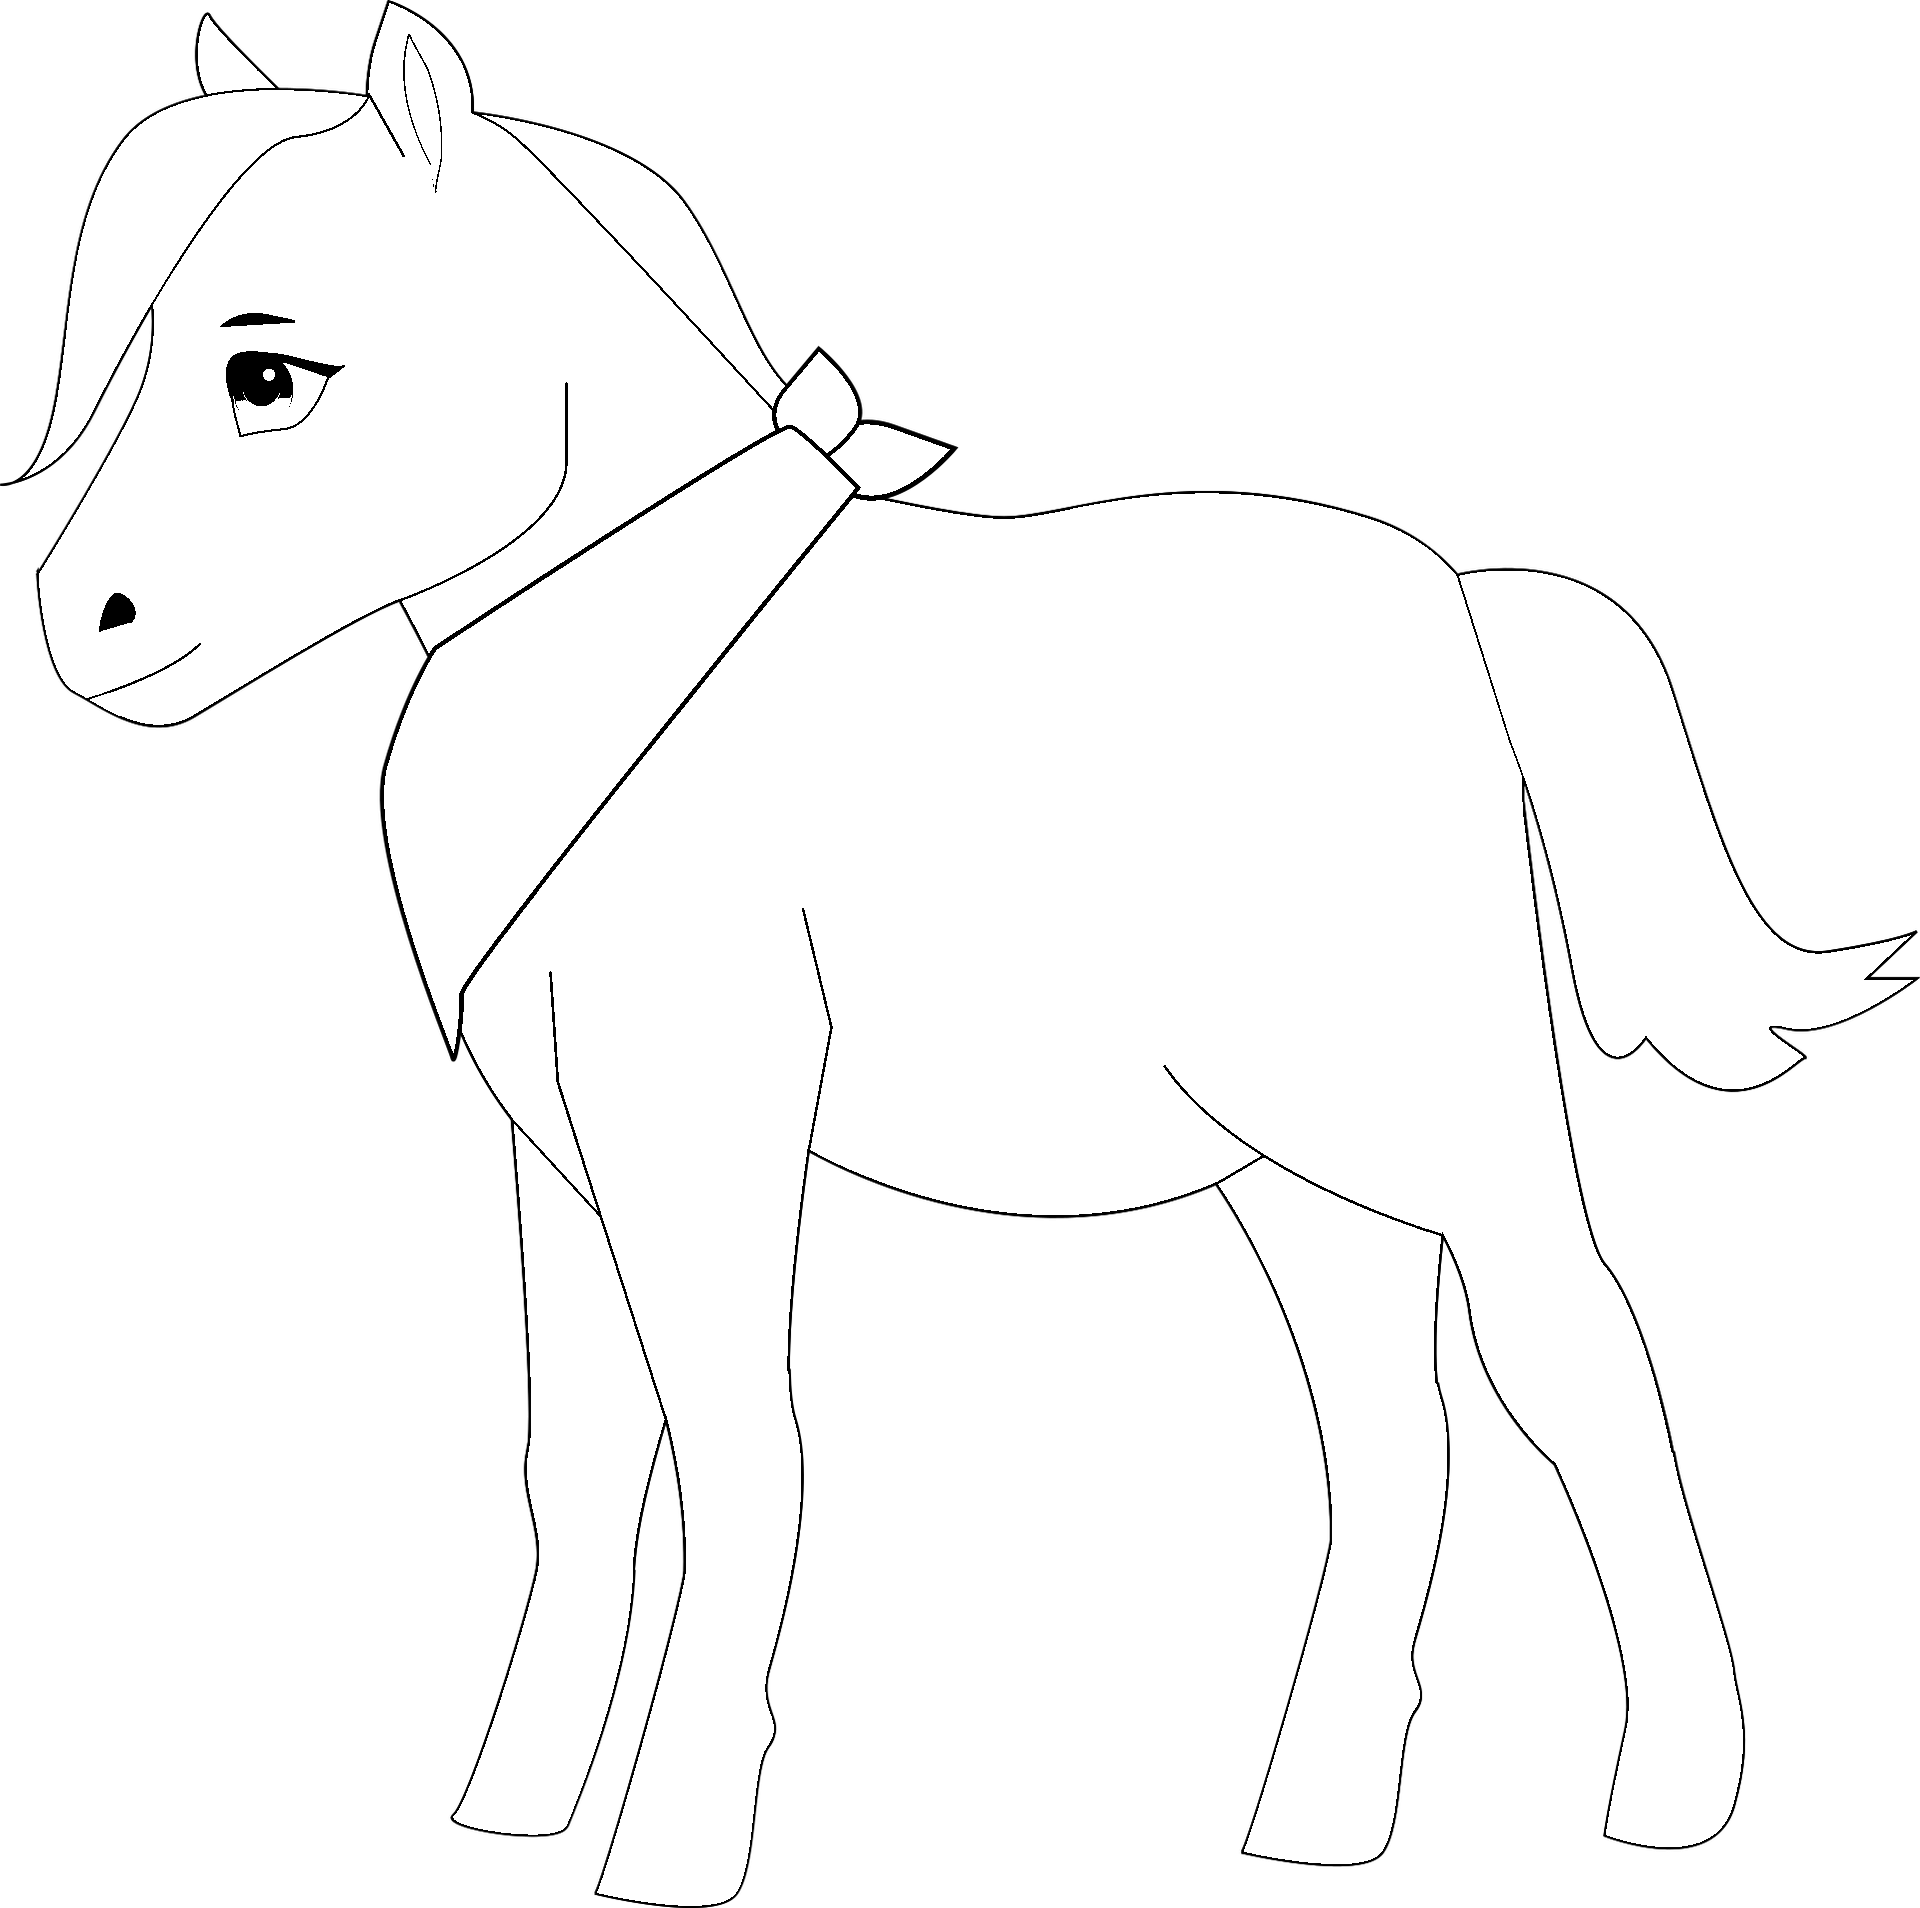 Disegno da colorare di cavallo Pony kawaii  